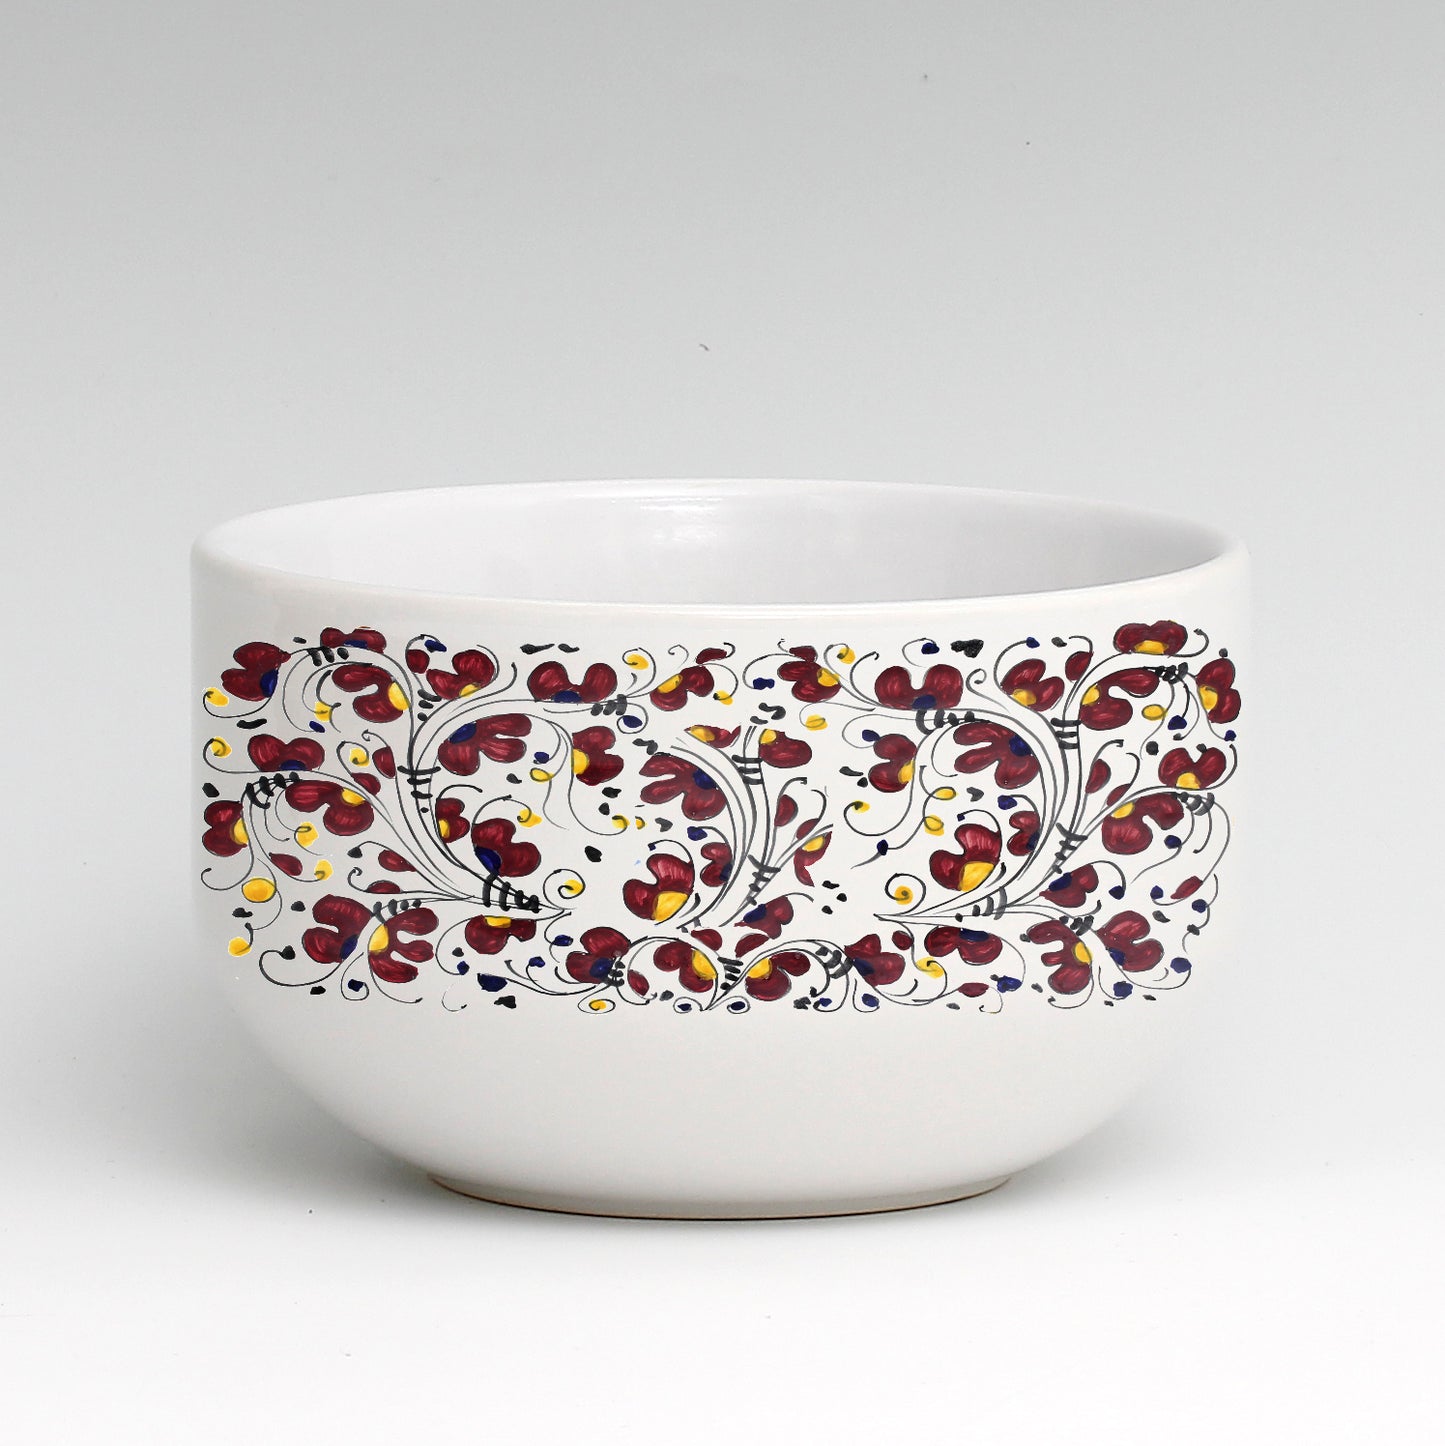 SUBLIMART: Porcelain Cereal/Soup Bowl Deruta Style (Design #DER06)